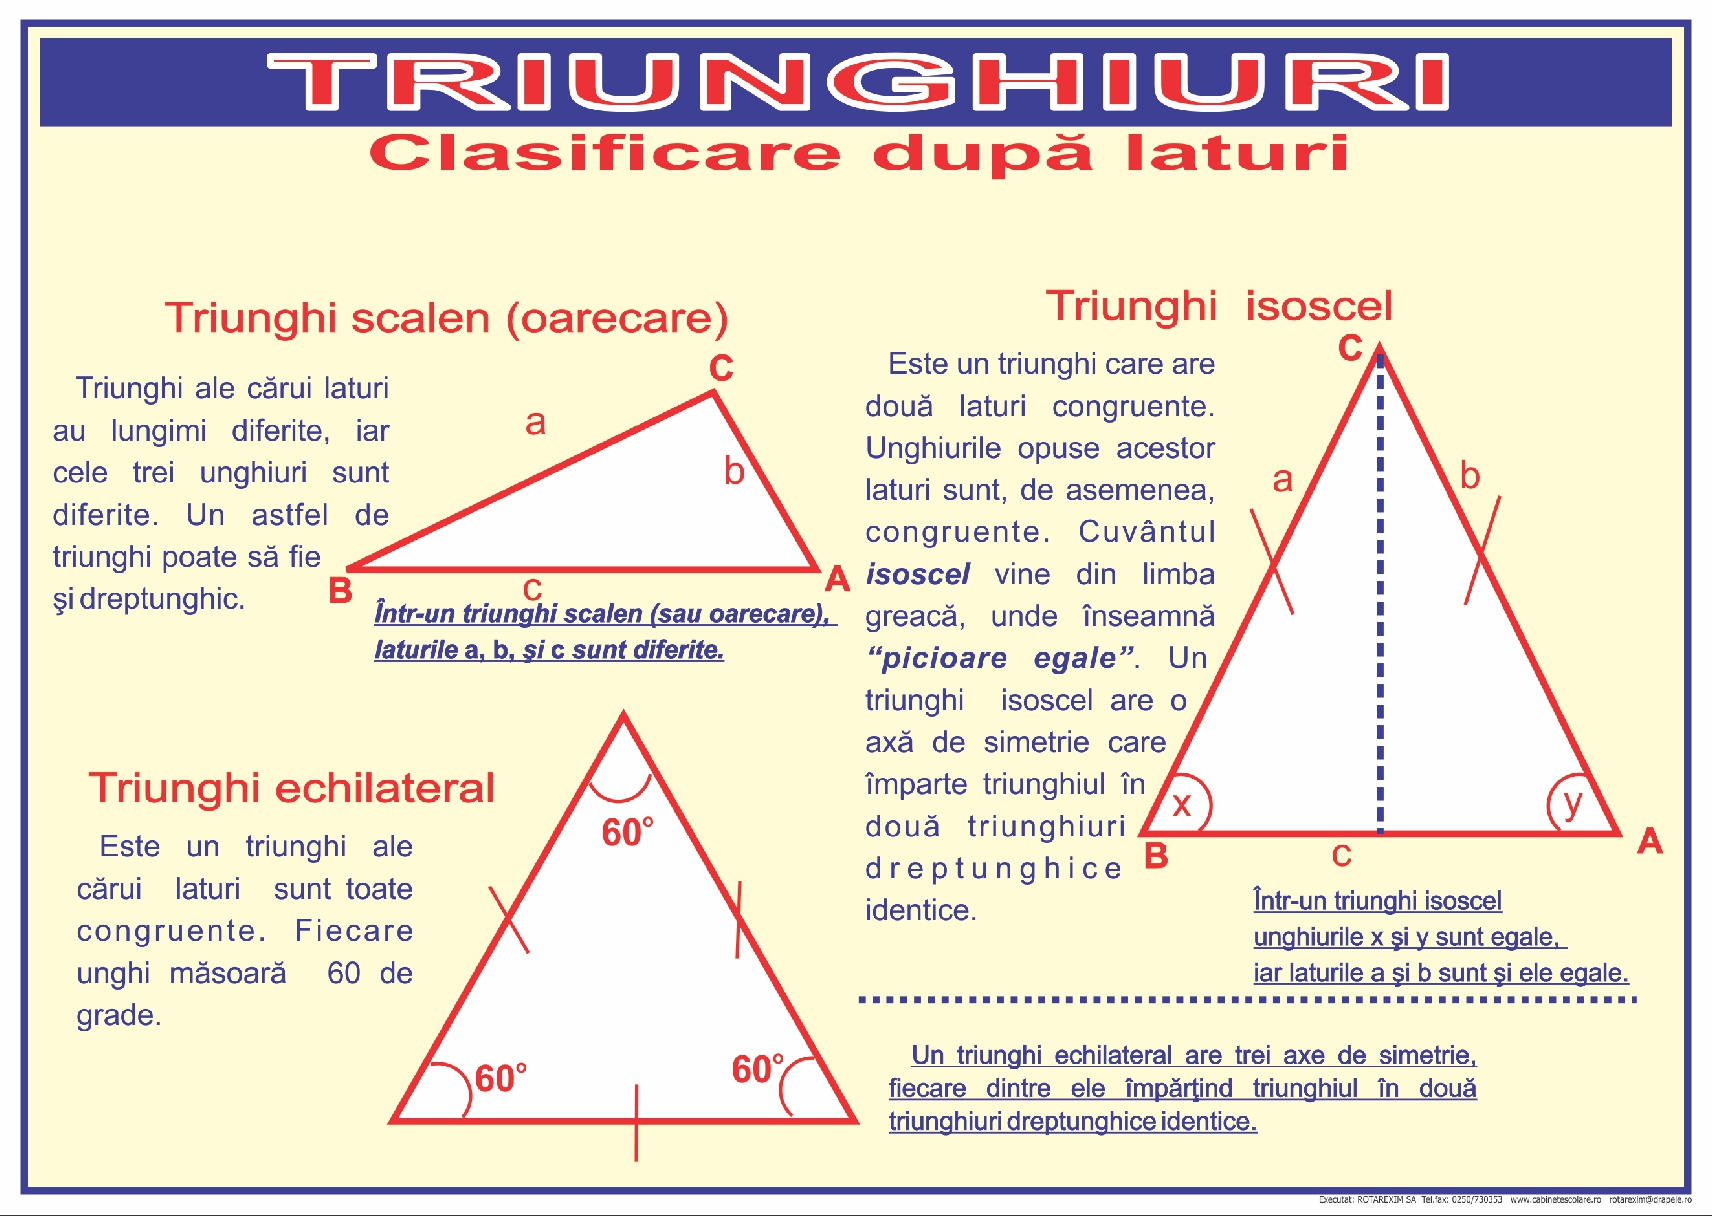 Triunghiuri